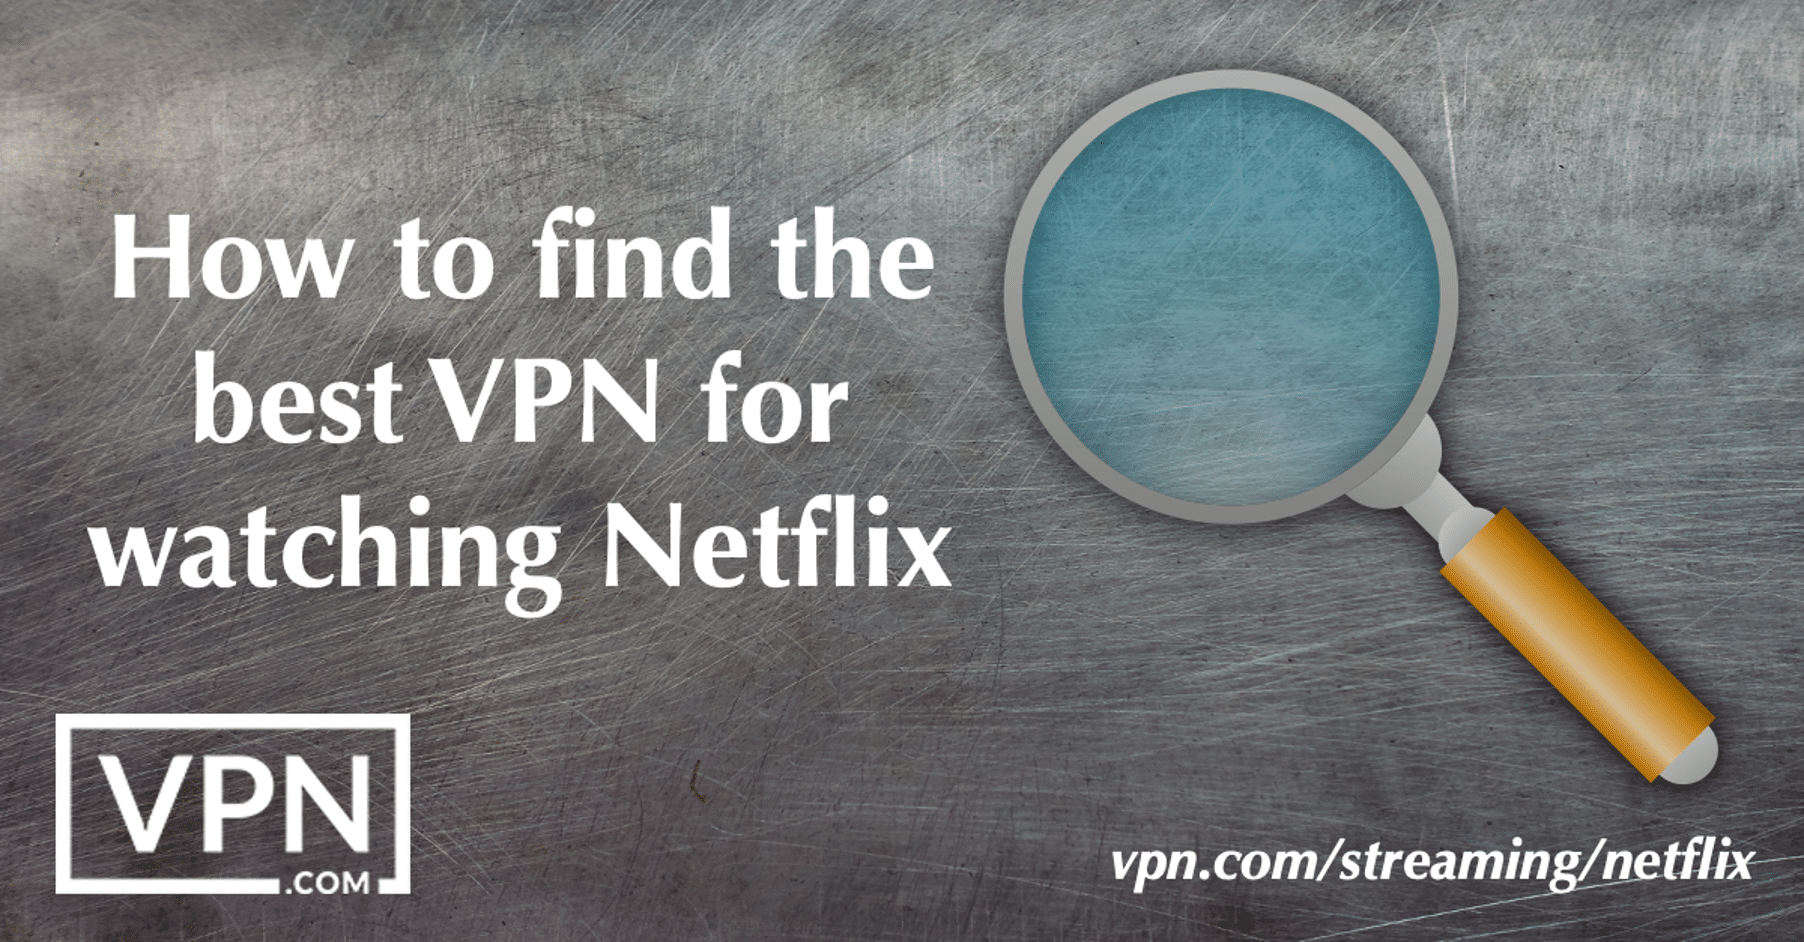 Como encontrar a melhor VPN para ver o Netflix